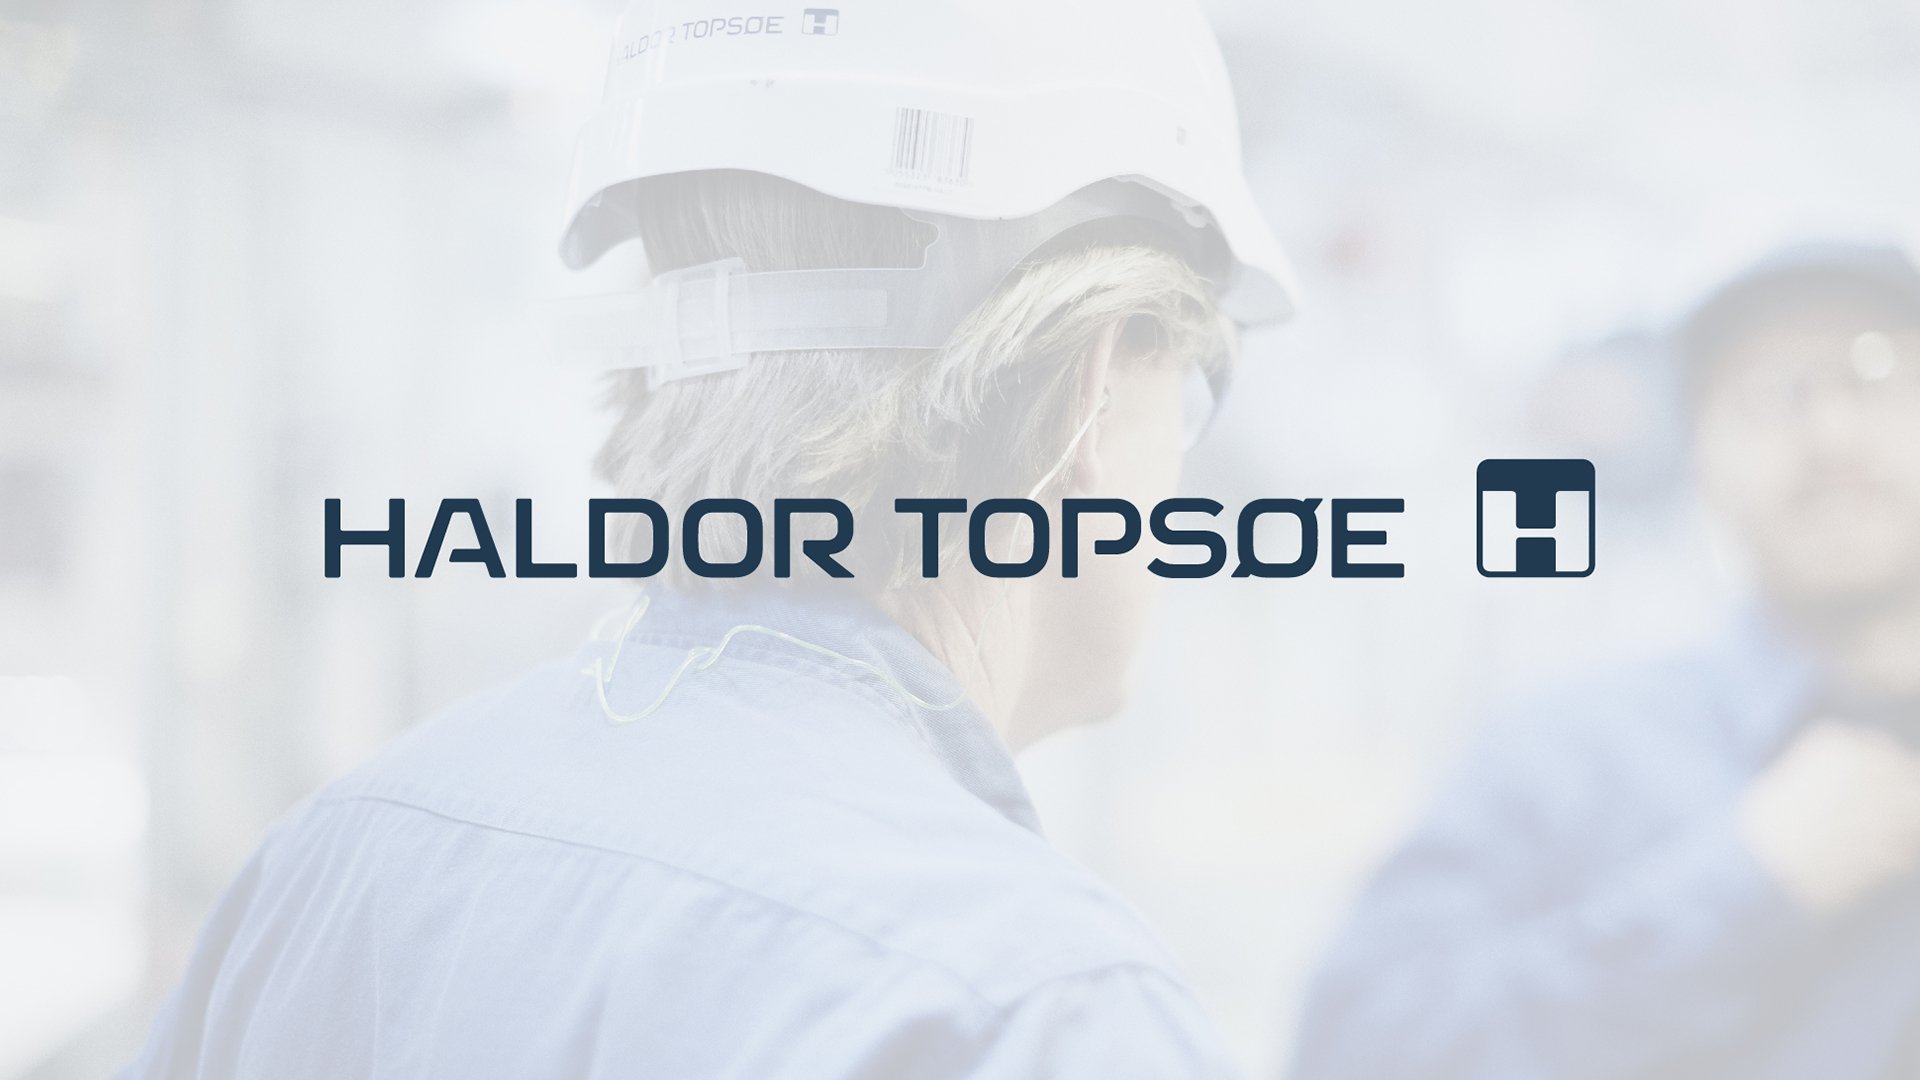 Haldor Topsøe logo on top of image by LOOP Associates